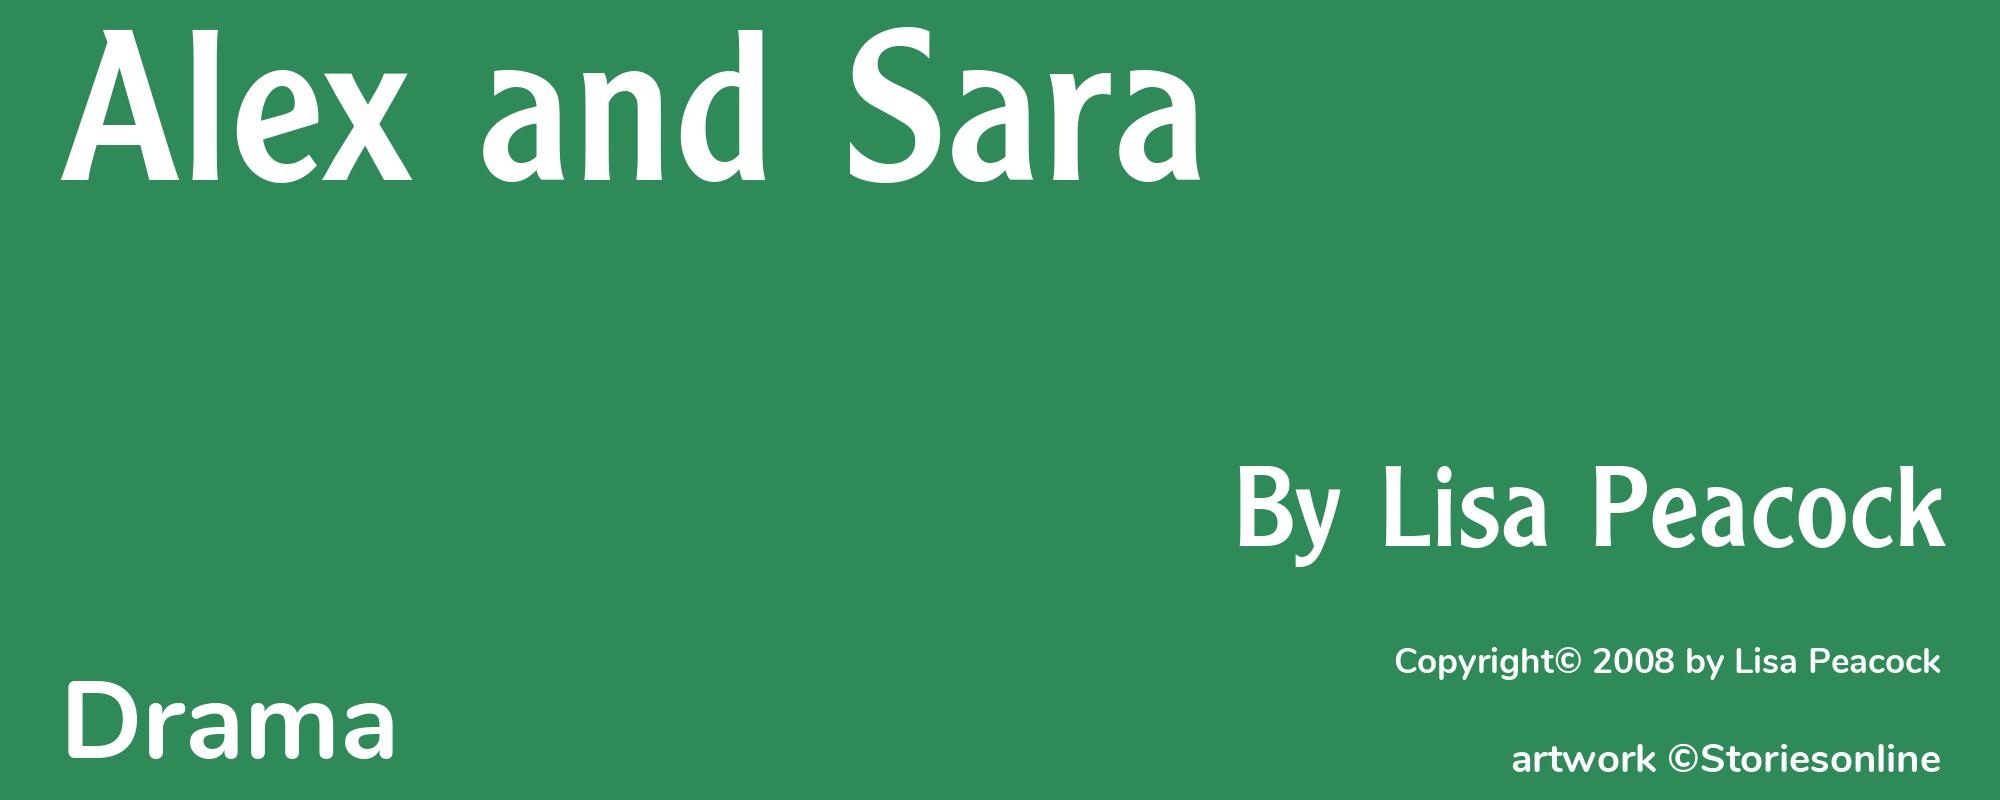 Alex and Sara - Cover